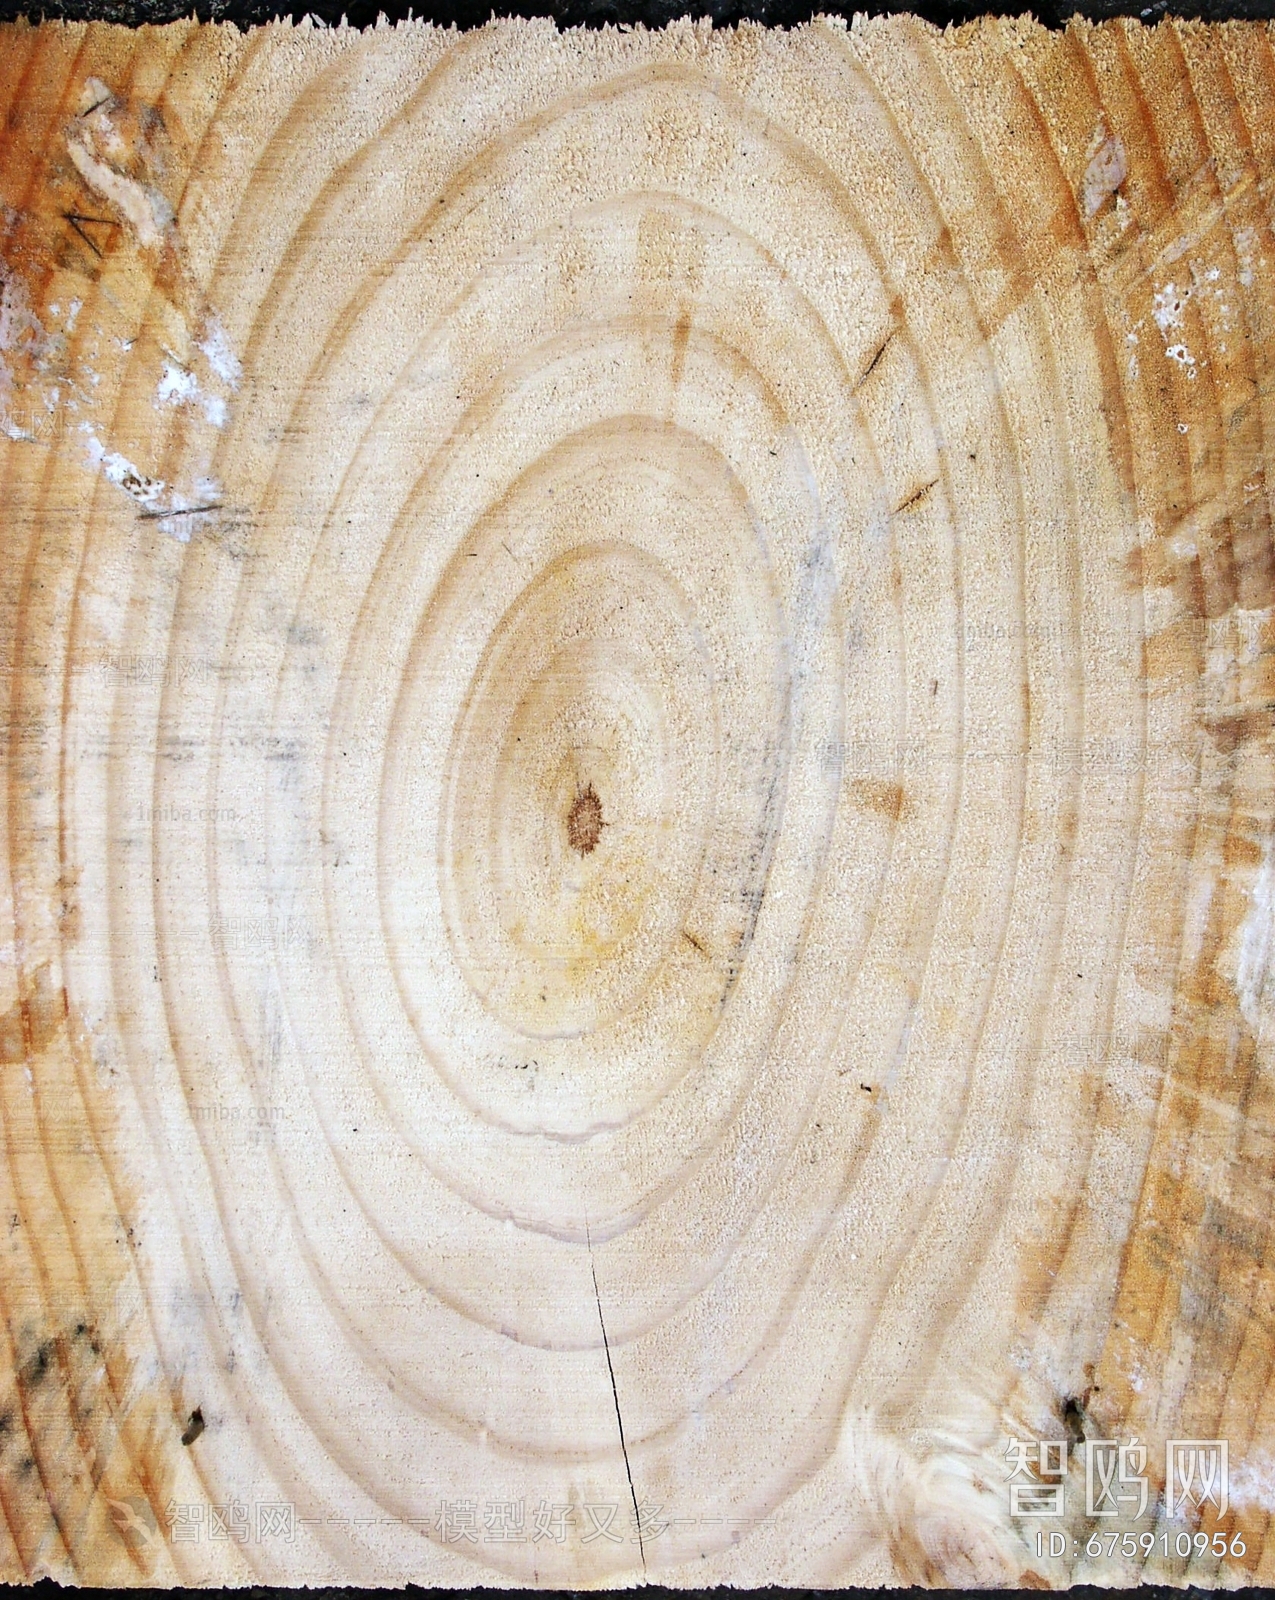 树干切面年轮木材